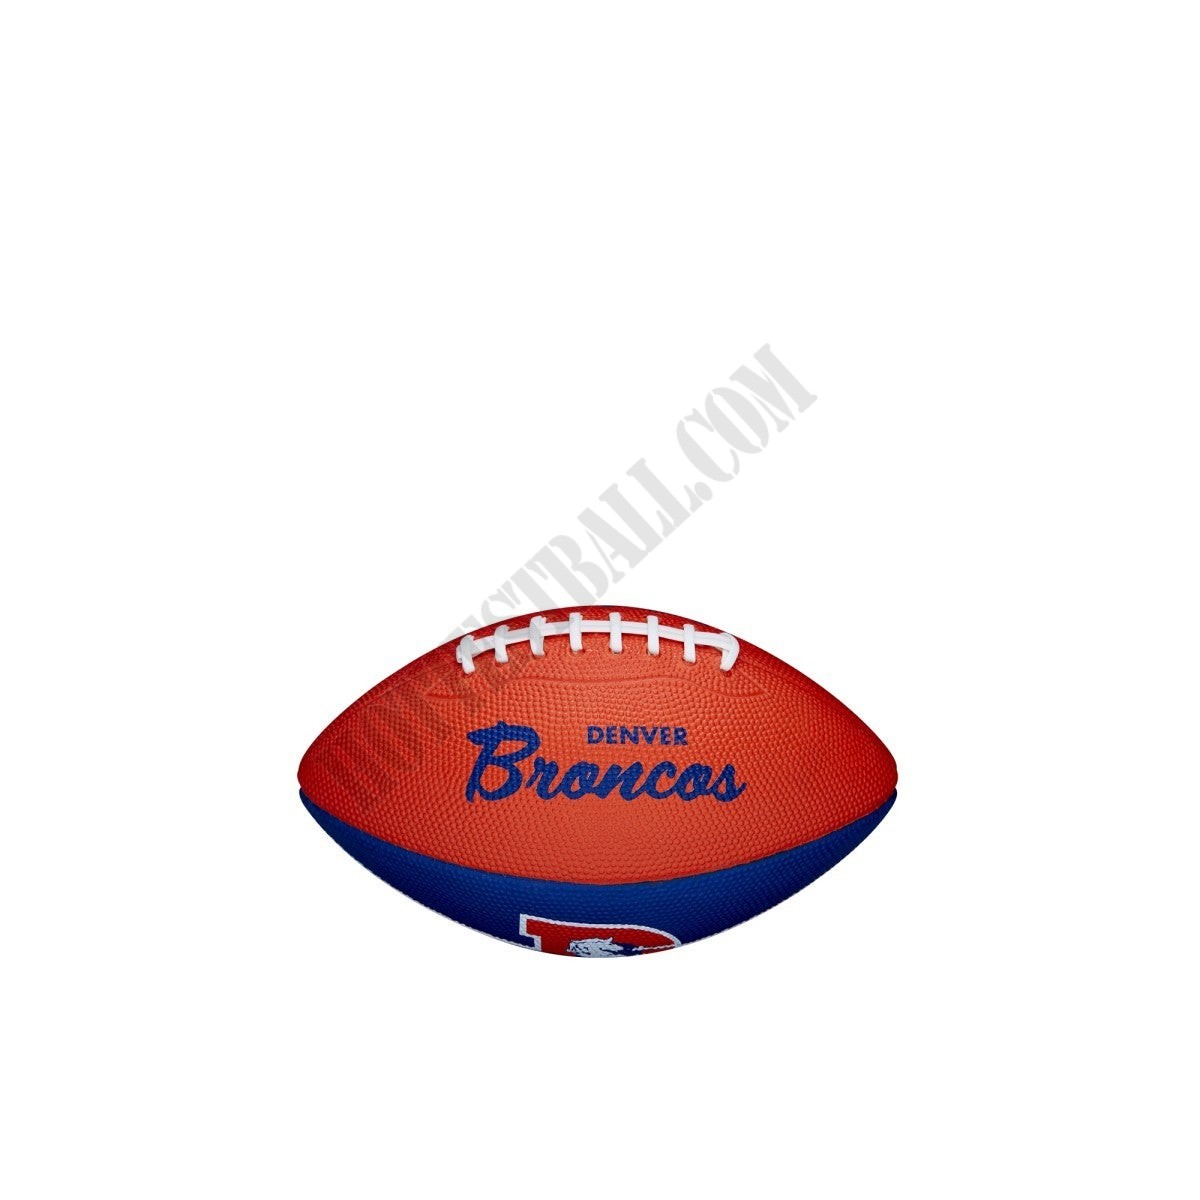 NFL Retro Mini Football - Denver Broncos ● Wilson Promotions - NFL Retro Mini Football - Denver Broncos ● Wilson Promotions